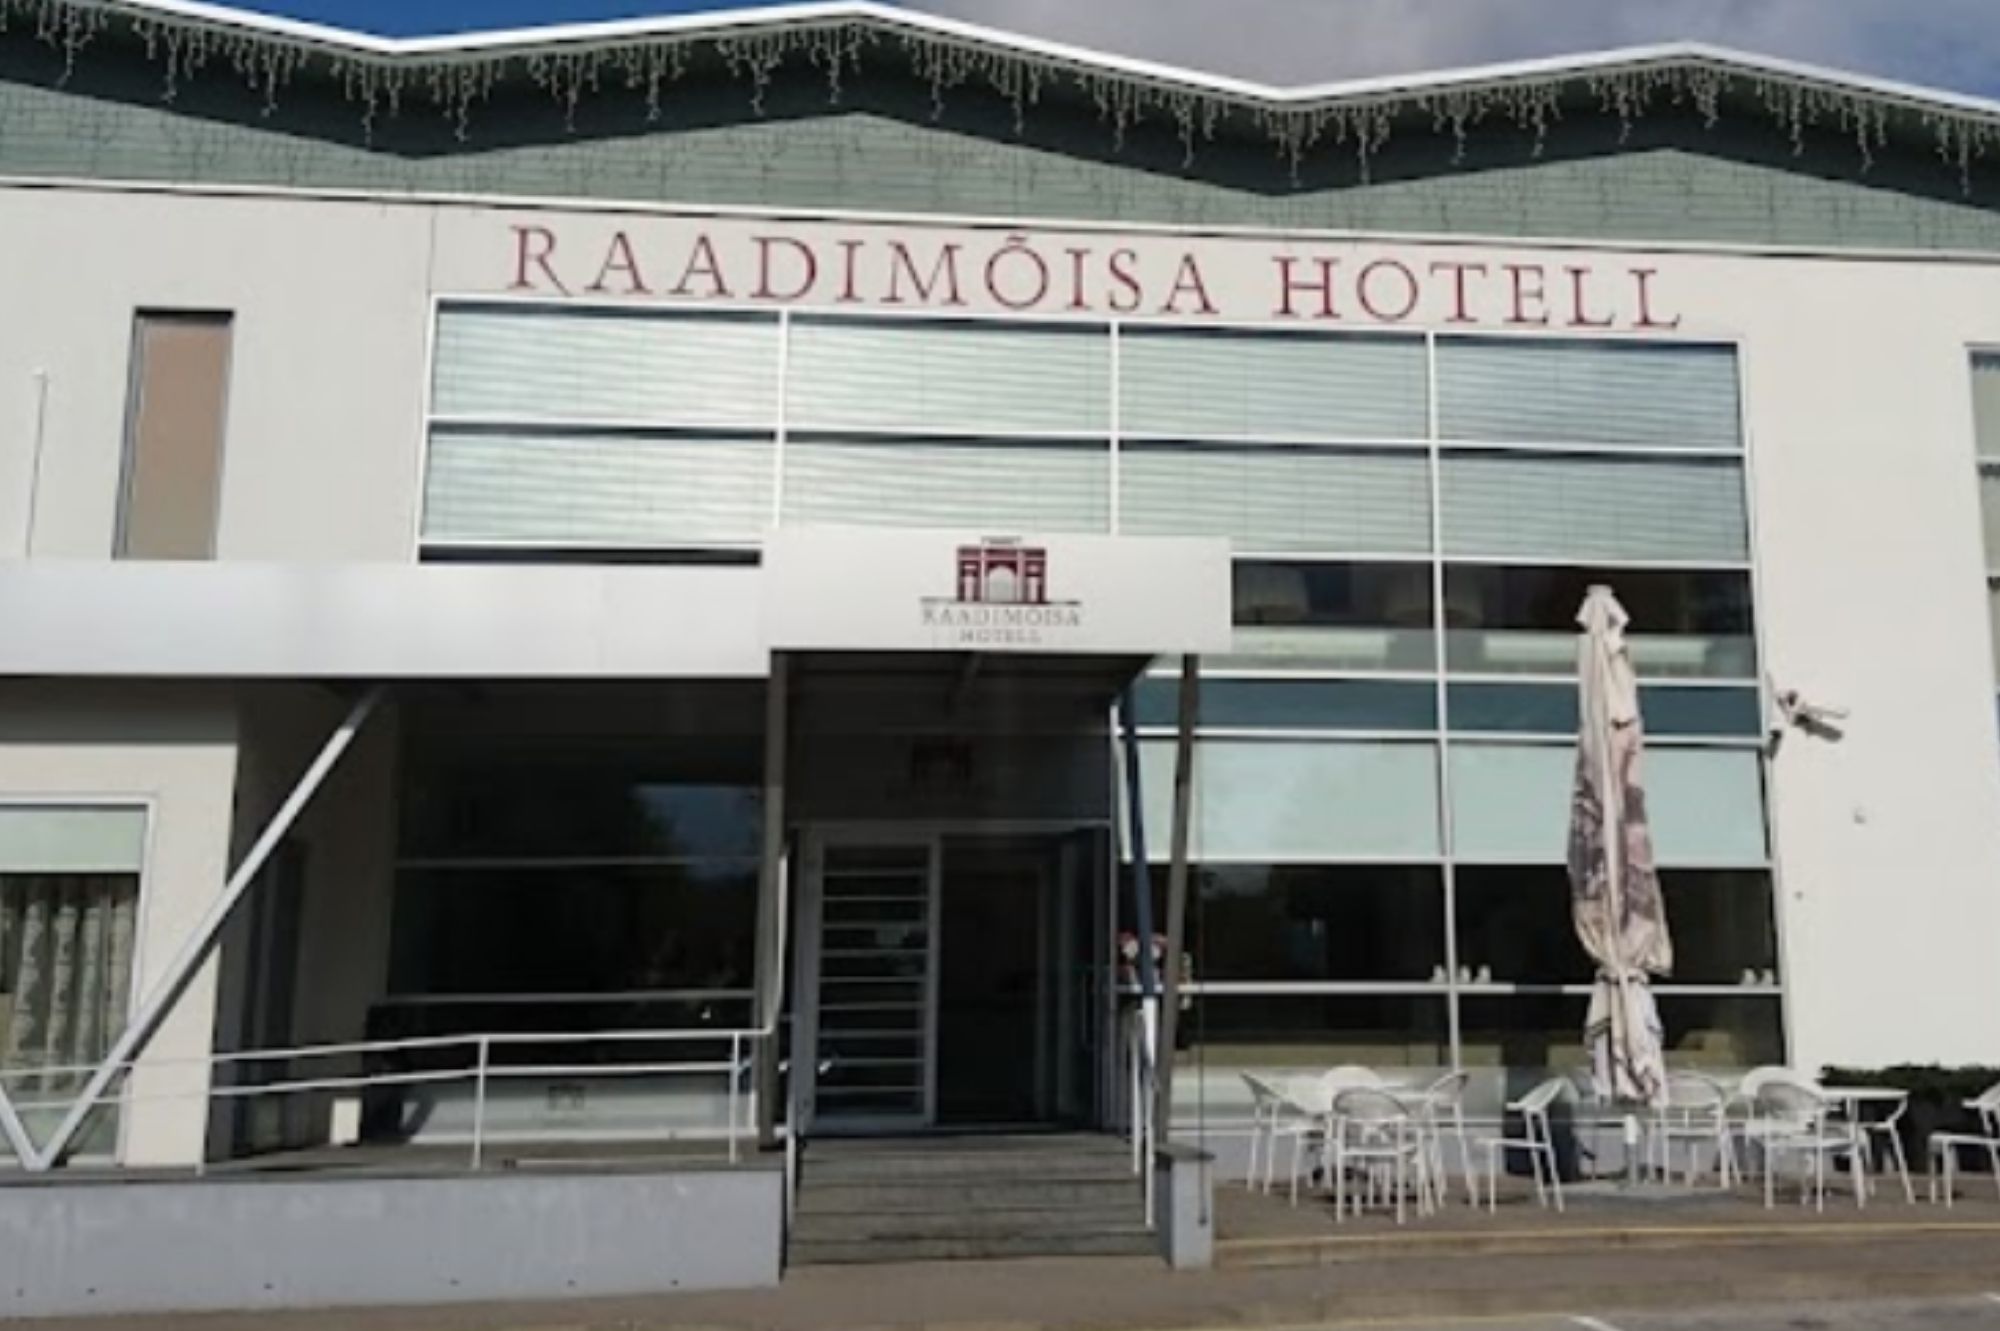 Центр встречи украинских военных беженцев в Тарту с сегодняшнего дня находится в отеле Raadimõisa. Источник фото: скриншот с фото в Google Maps.